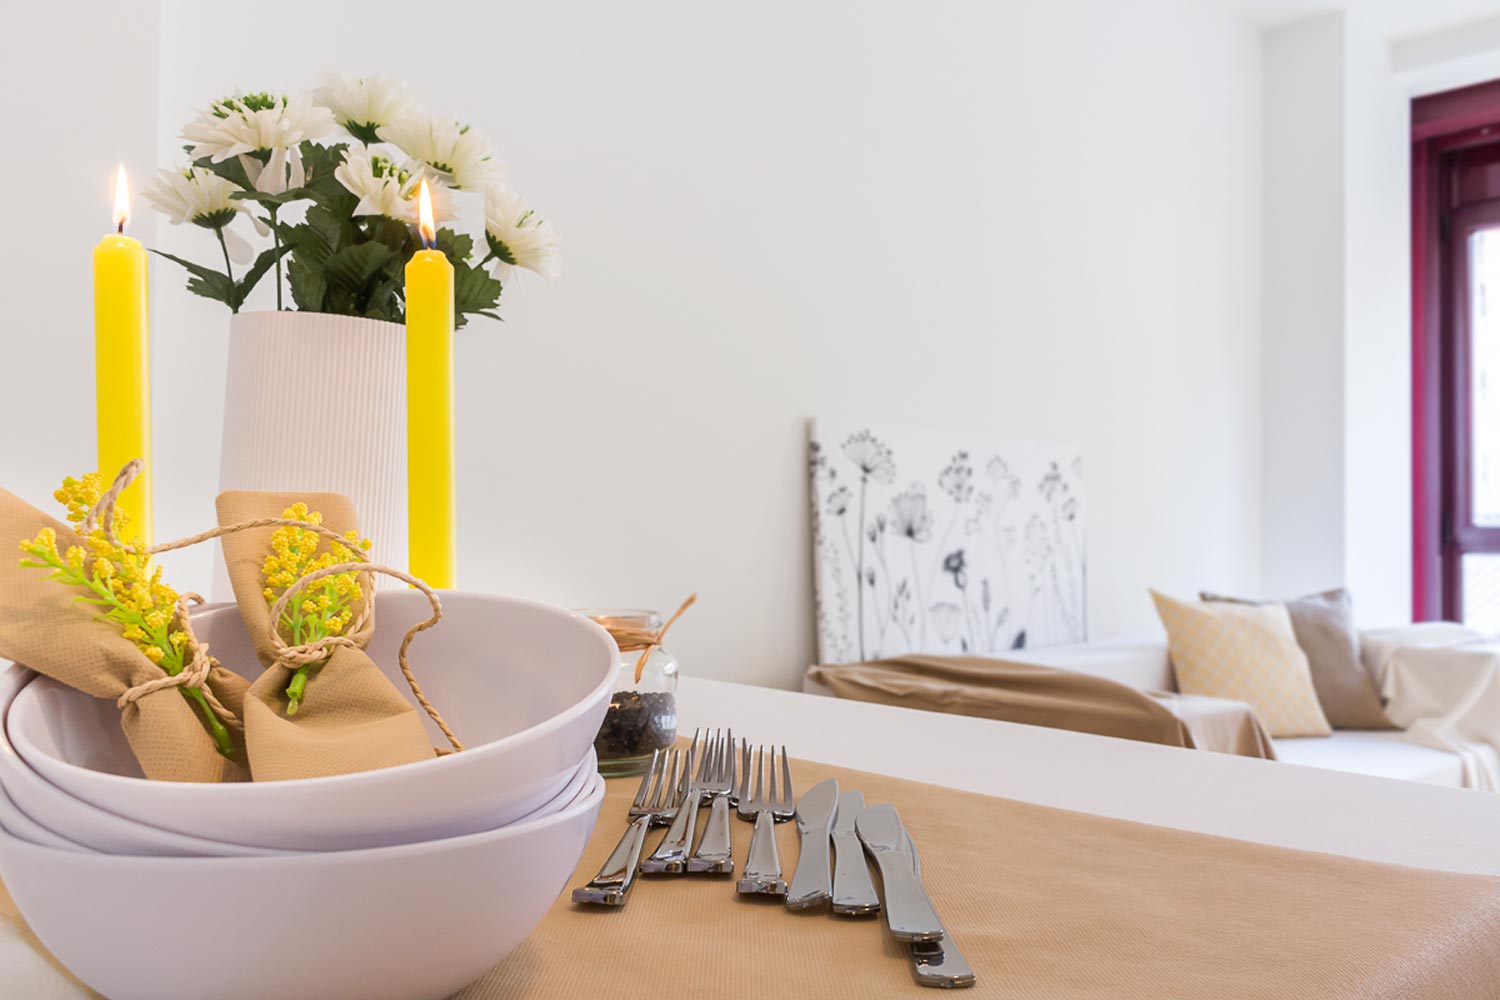 Detalle platos y cubiertos sobre mesa de comedor y velas amarillas_ Home Staging